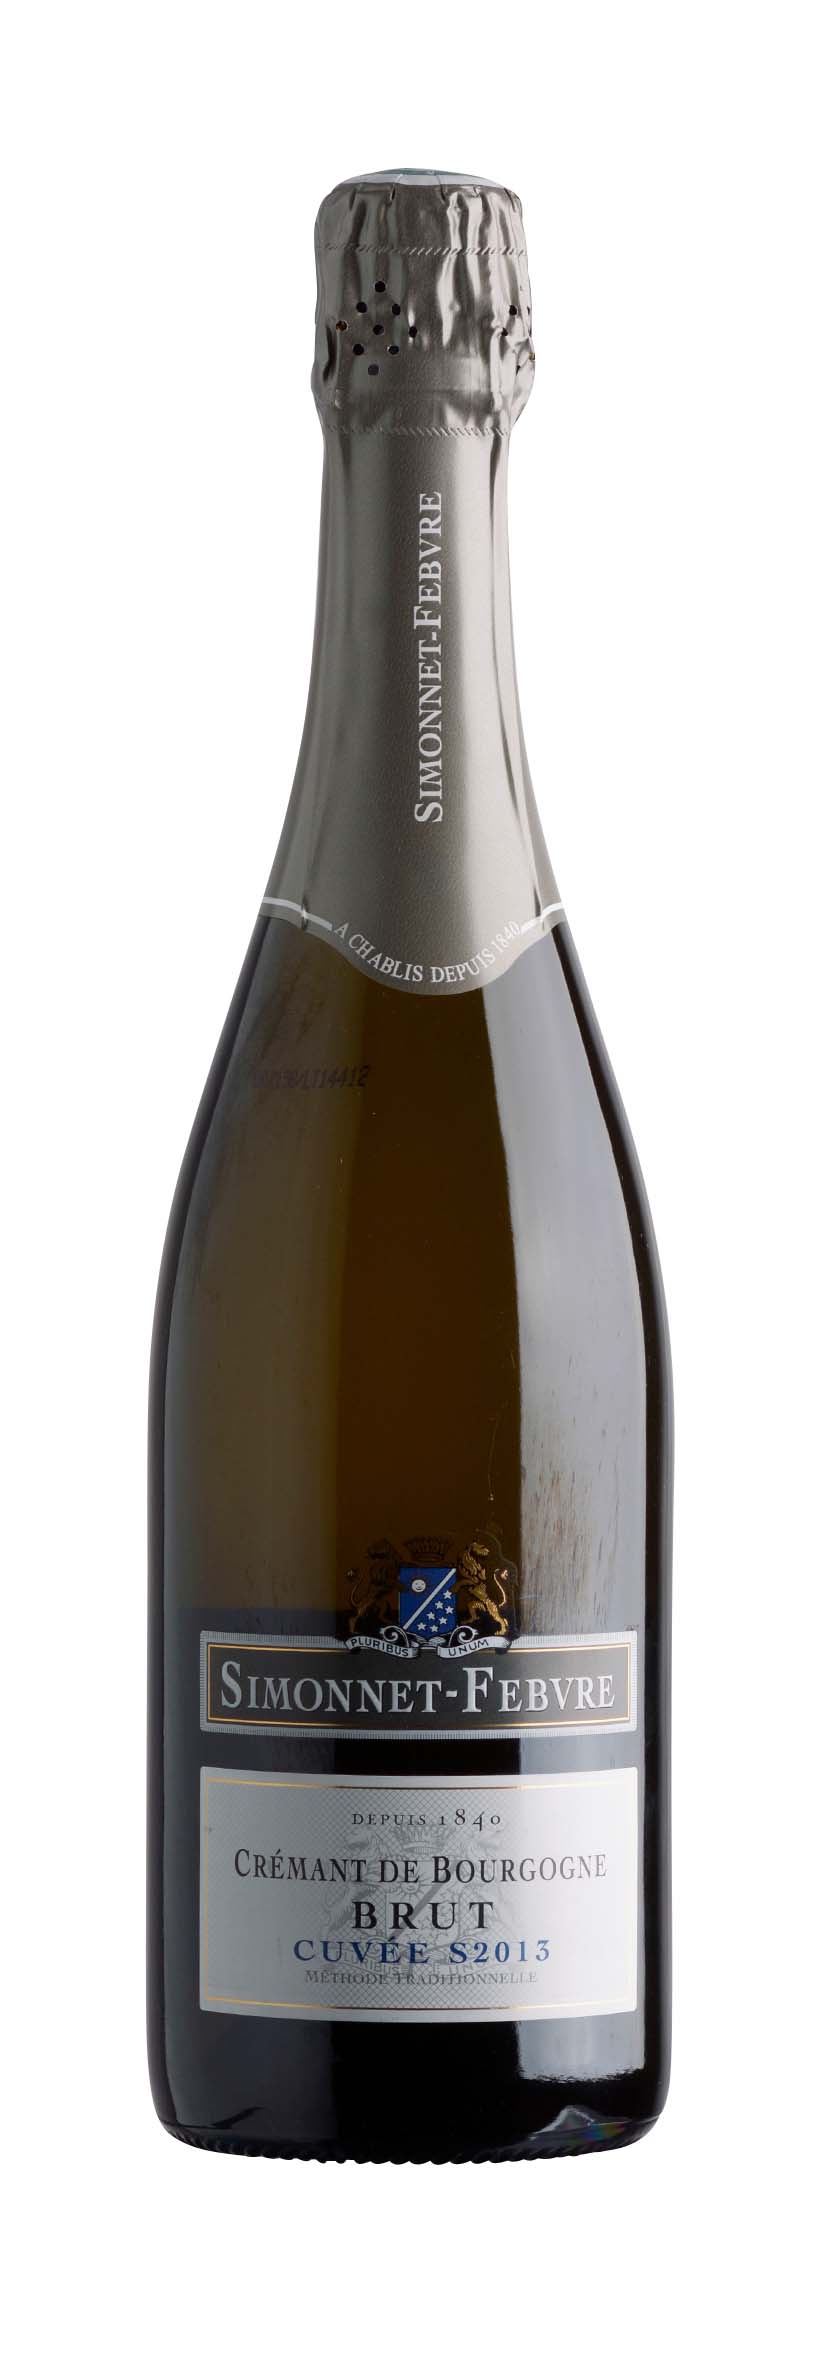 Crémant de Bourgogne AOC Cuvée S2013 2013